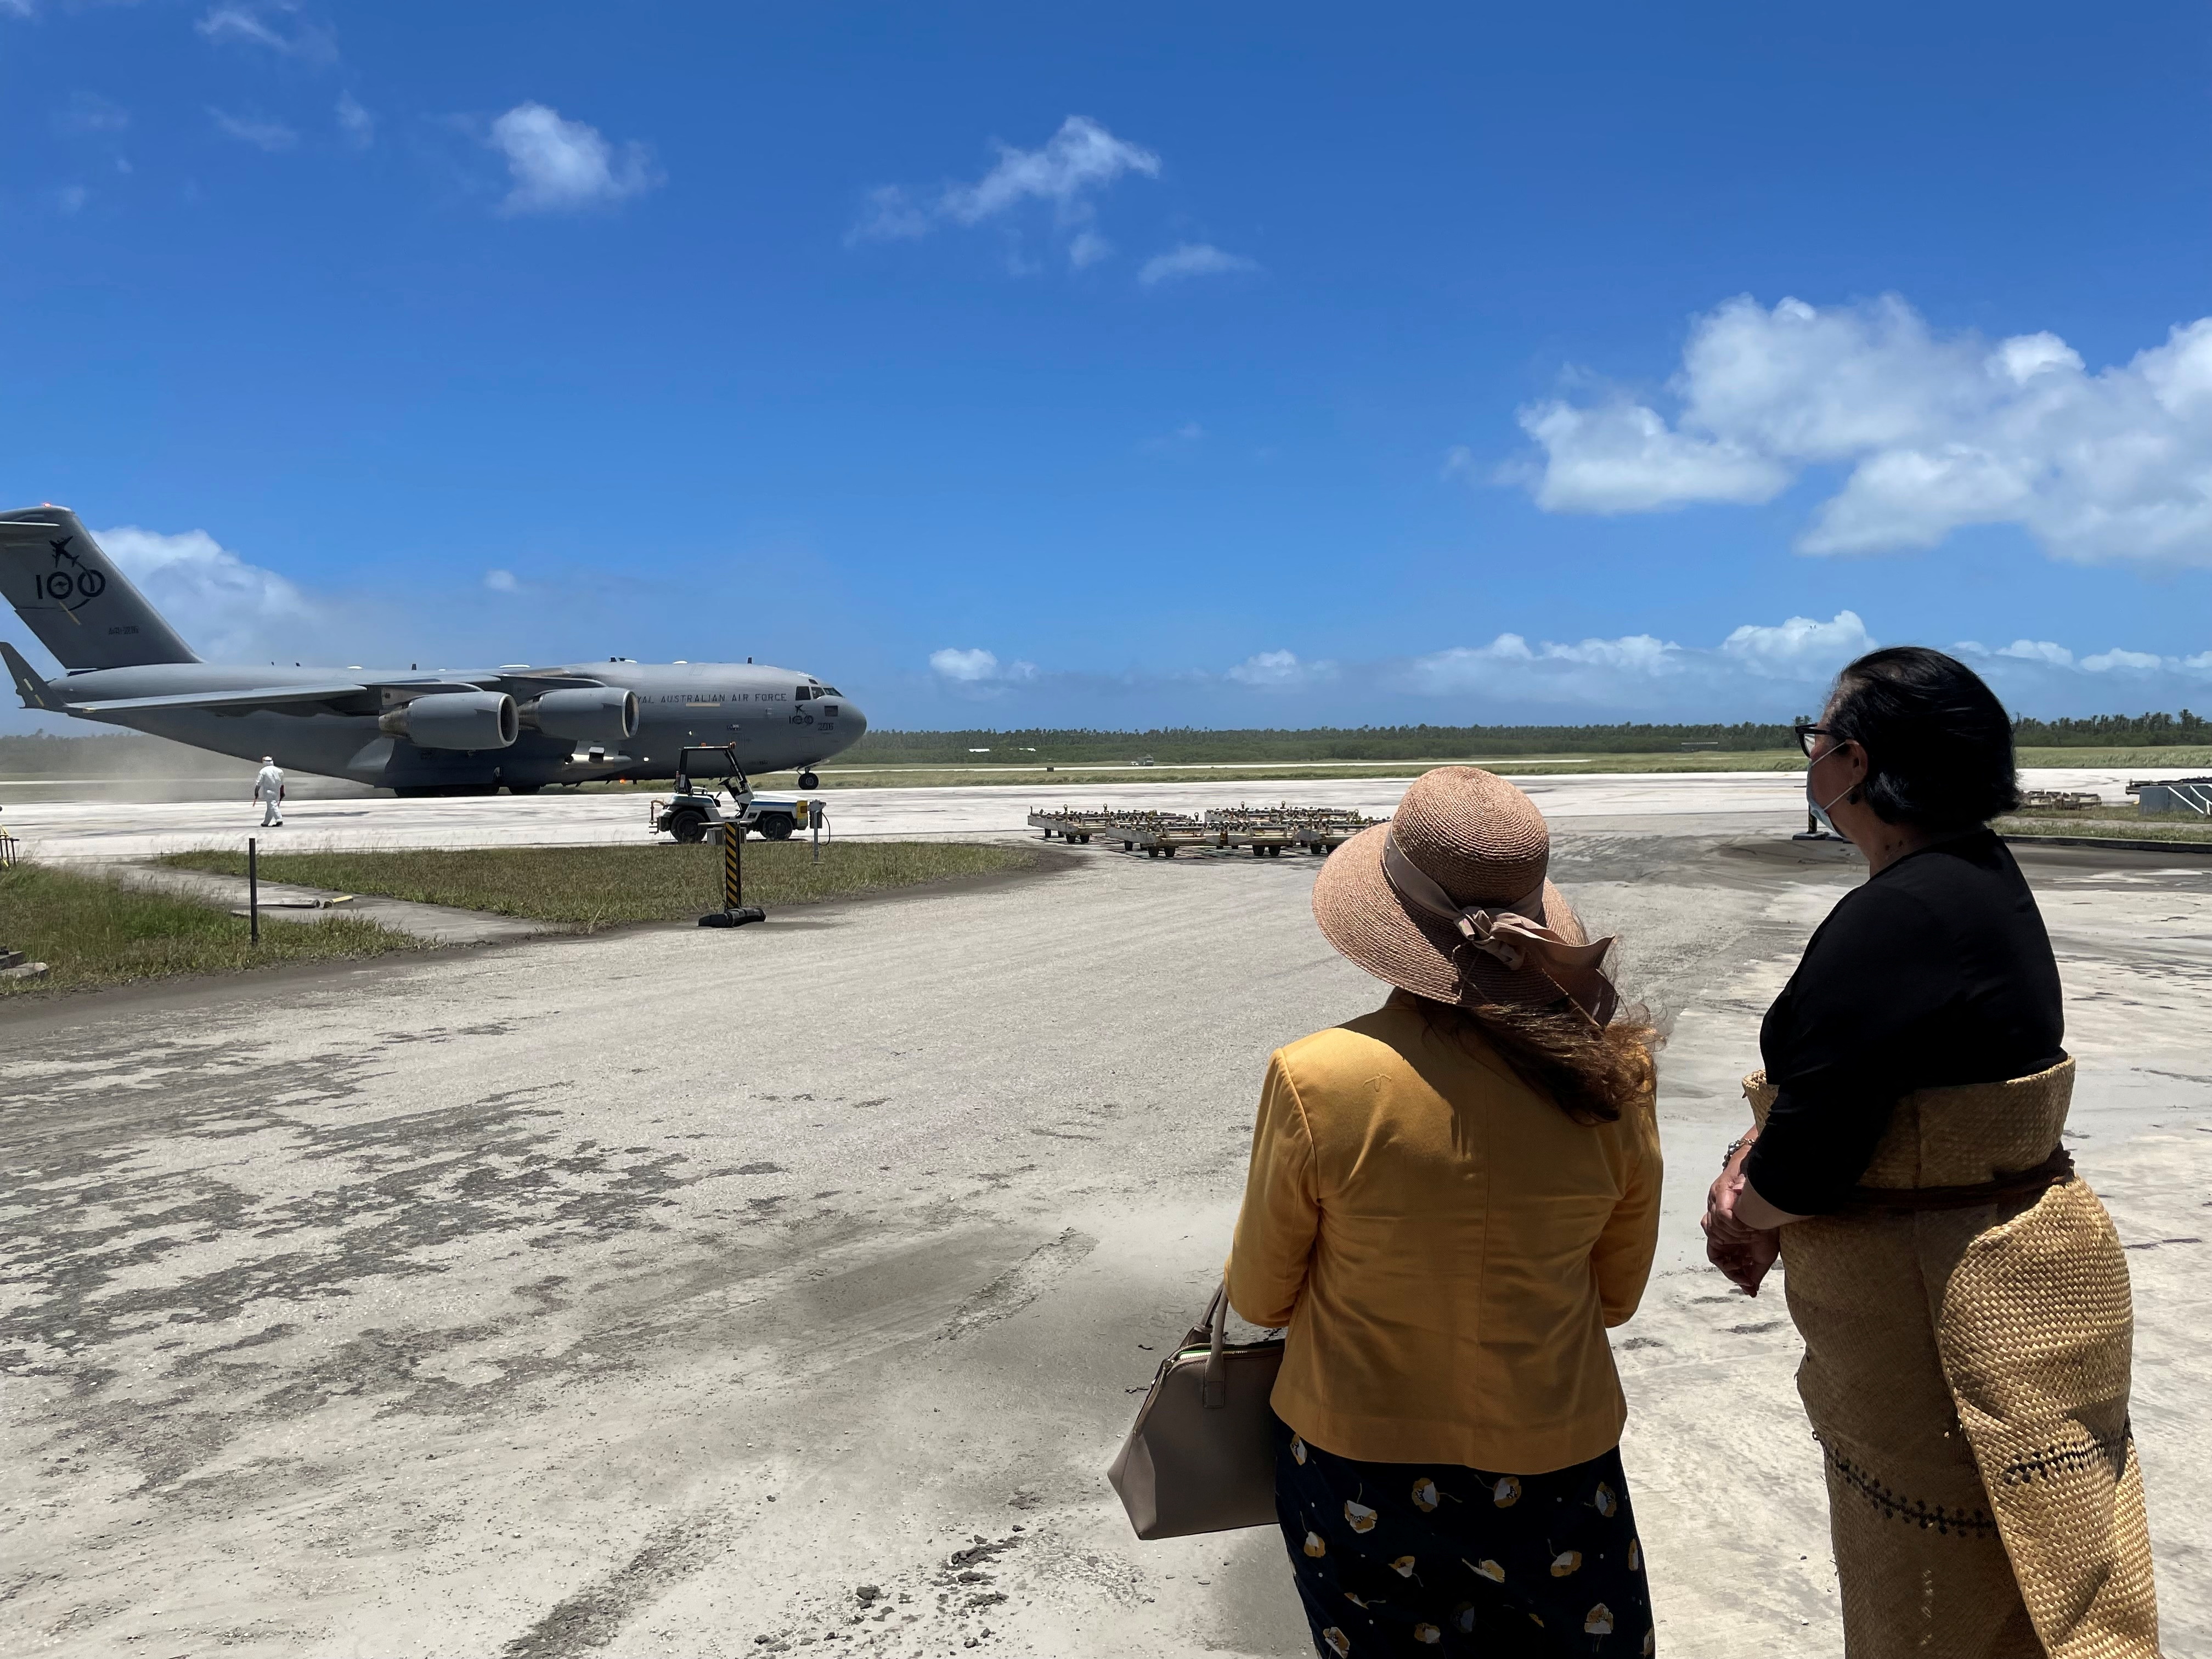 Dos grandes aviones militares de transporte de Australia y Nueva Zelanda aterrizaron en el principal aeropuerto de Tonga